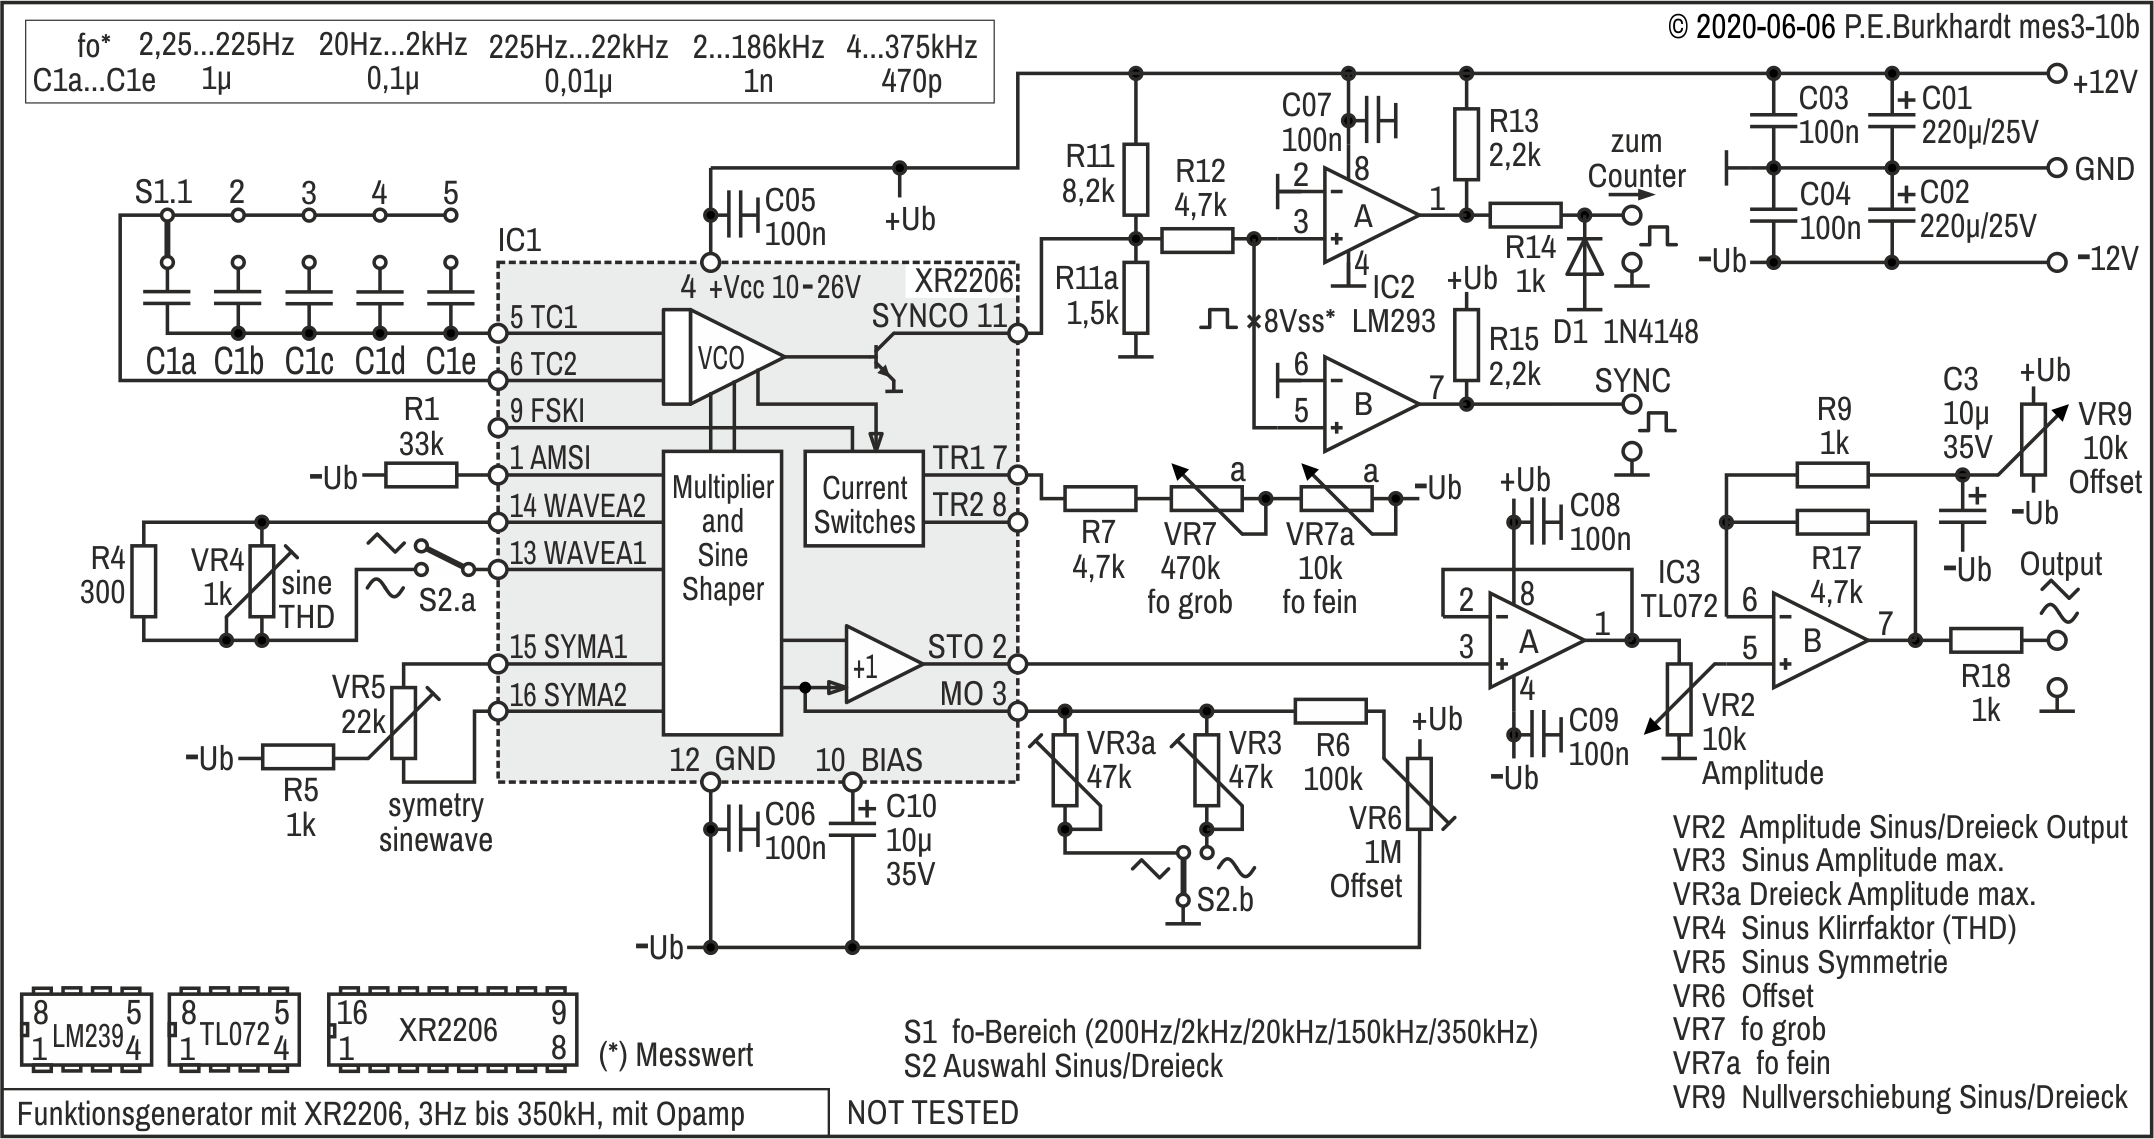 Funktionsgenerator XR2206, 3 Hz bis 350 kHz, Opamp-Ausgang